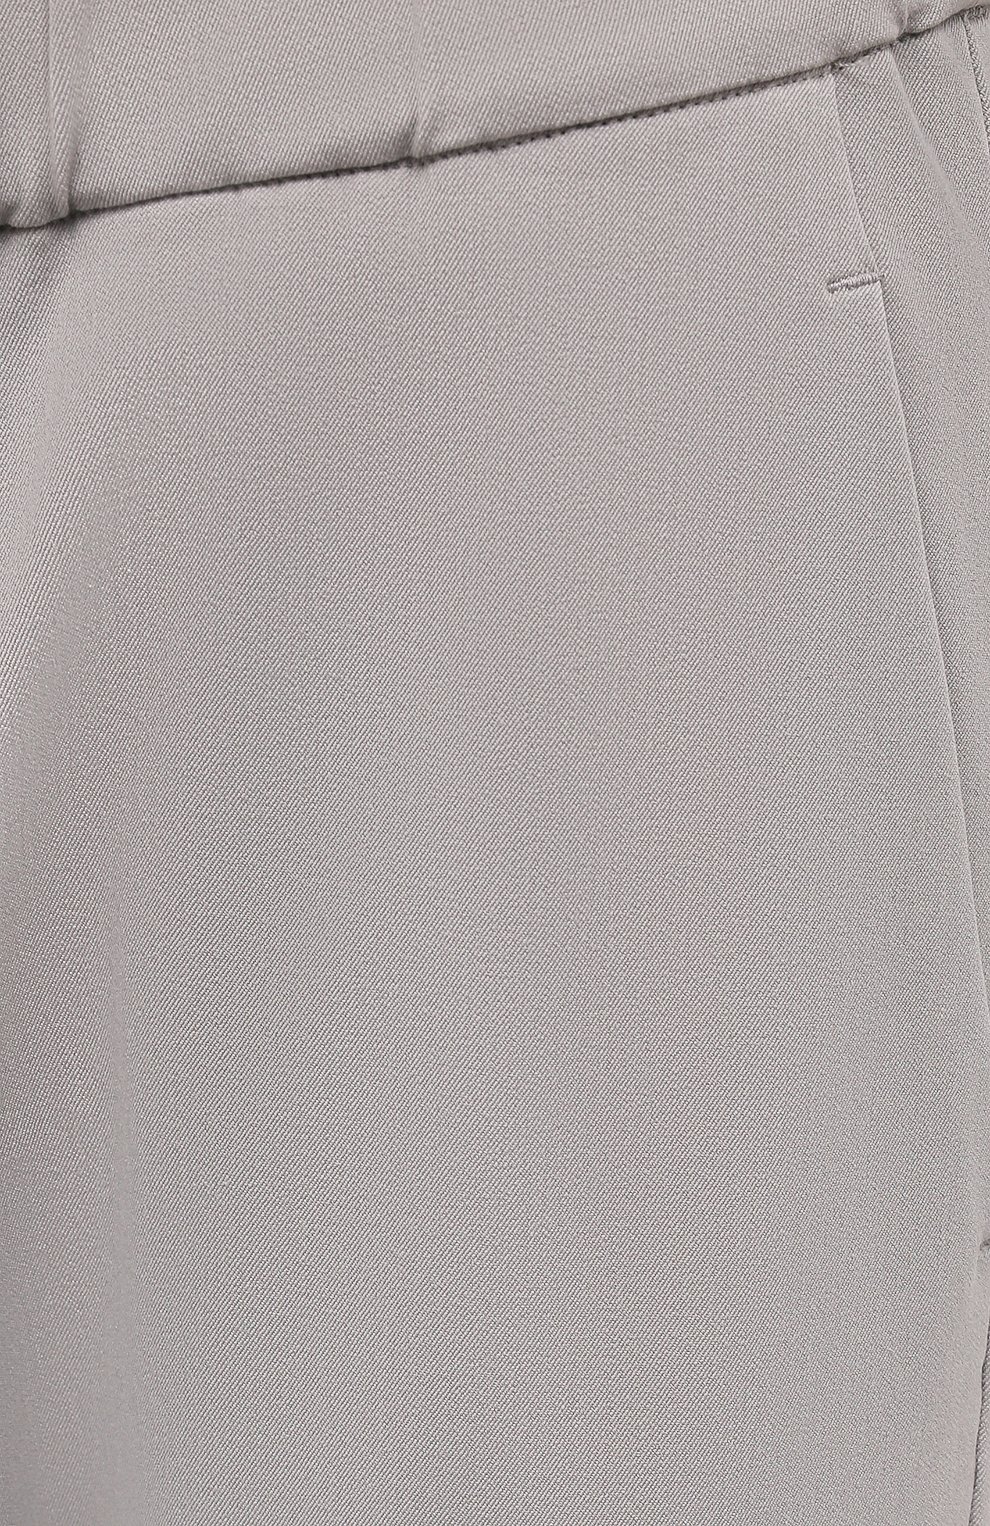 Мужские брюки из хлопка и вискозы KAZUYUKI KUMAGAI светло-серого цвета, арт. AP12-233 | Фото 5 (Длина (брюки, джинсы): Стандартные; Случай: Повседневный; Материал внешний: Хлопок, Вискоза; Стили: Минимализм)